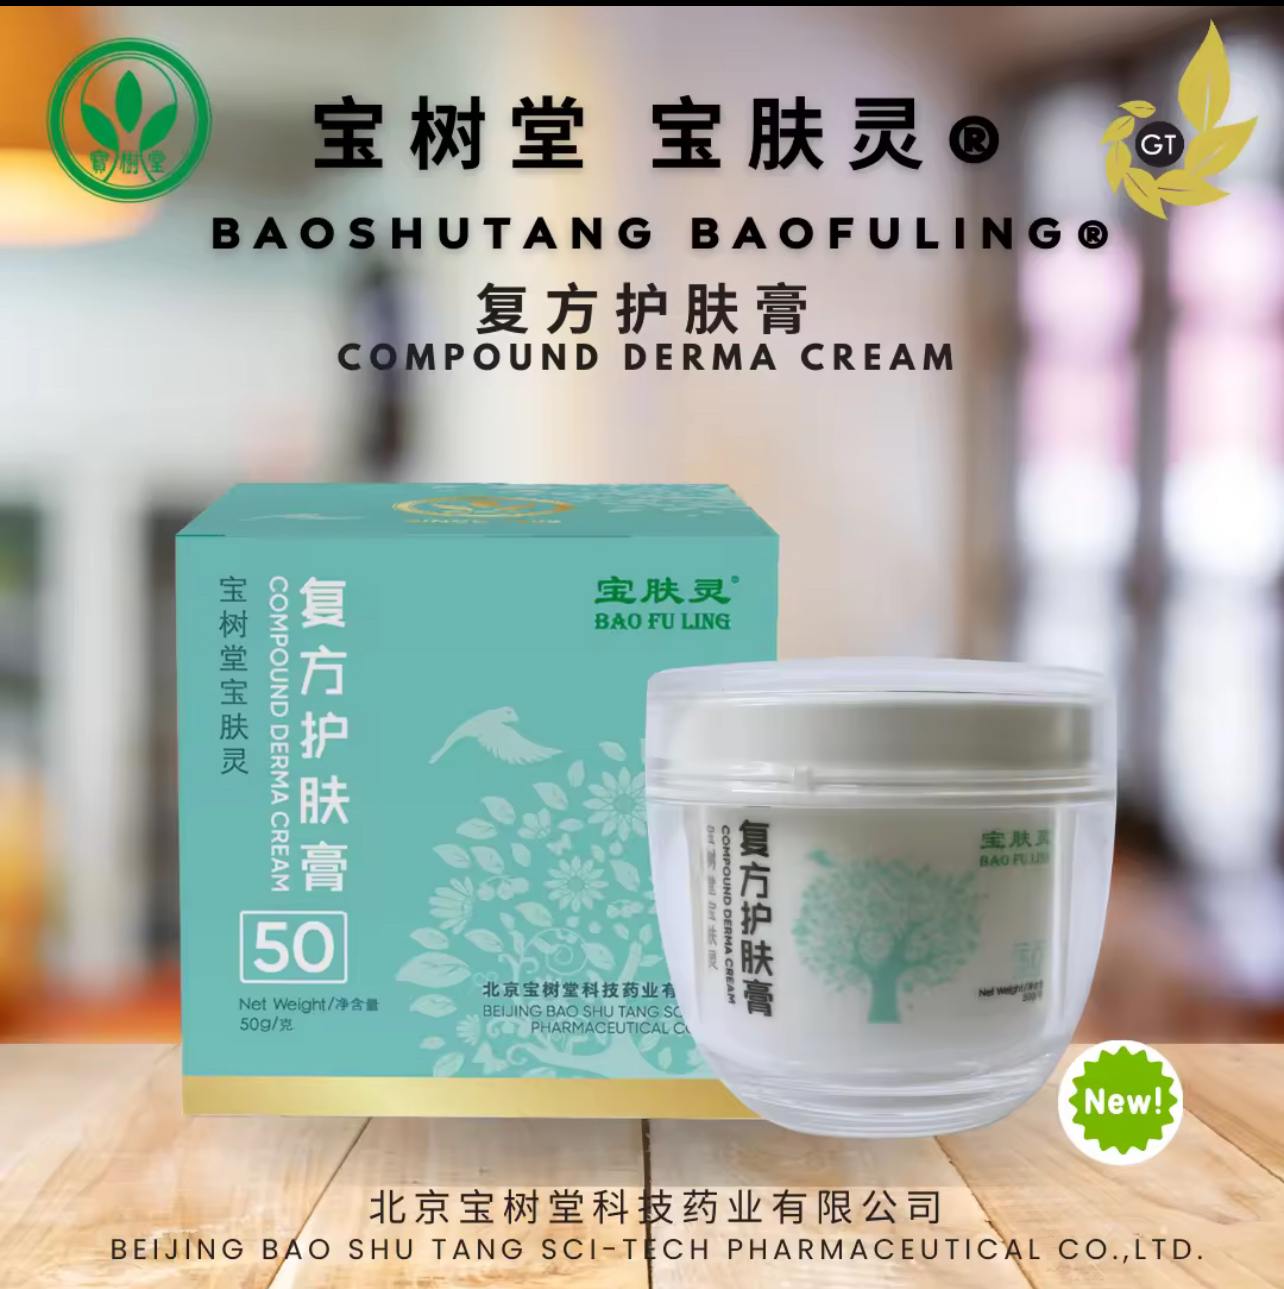 Beijing Bao Shu Tang Bao Fu Ling® - Compound Derma Cream (北京宝树 